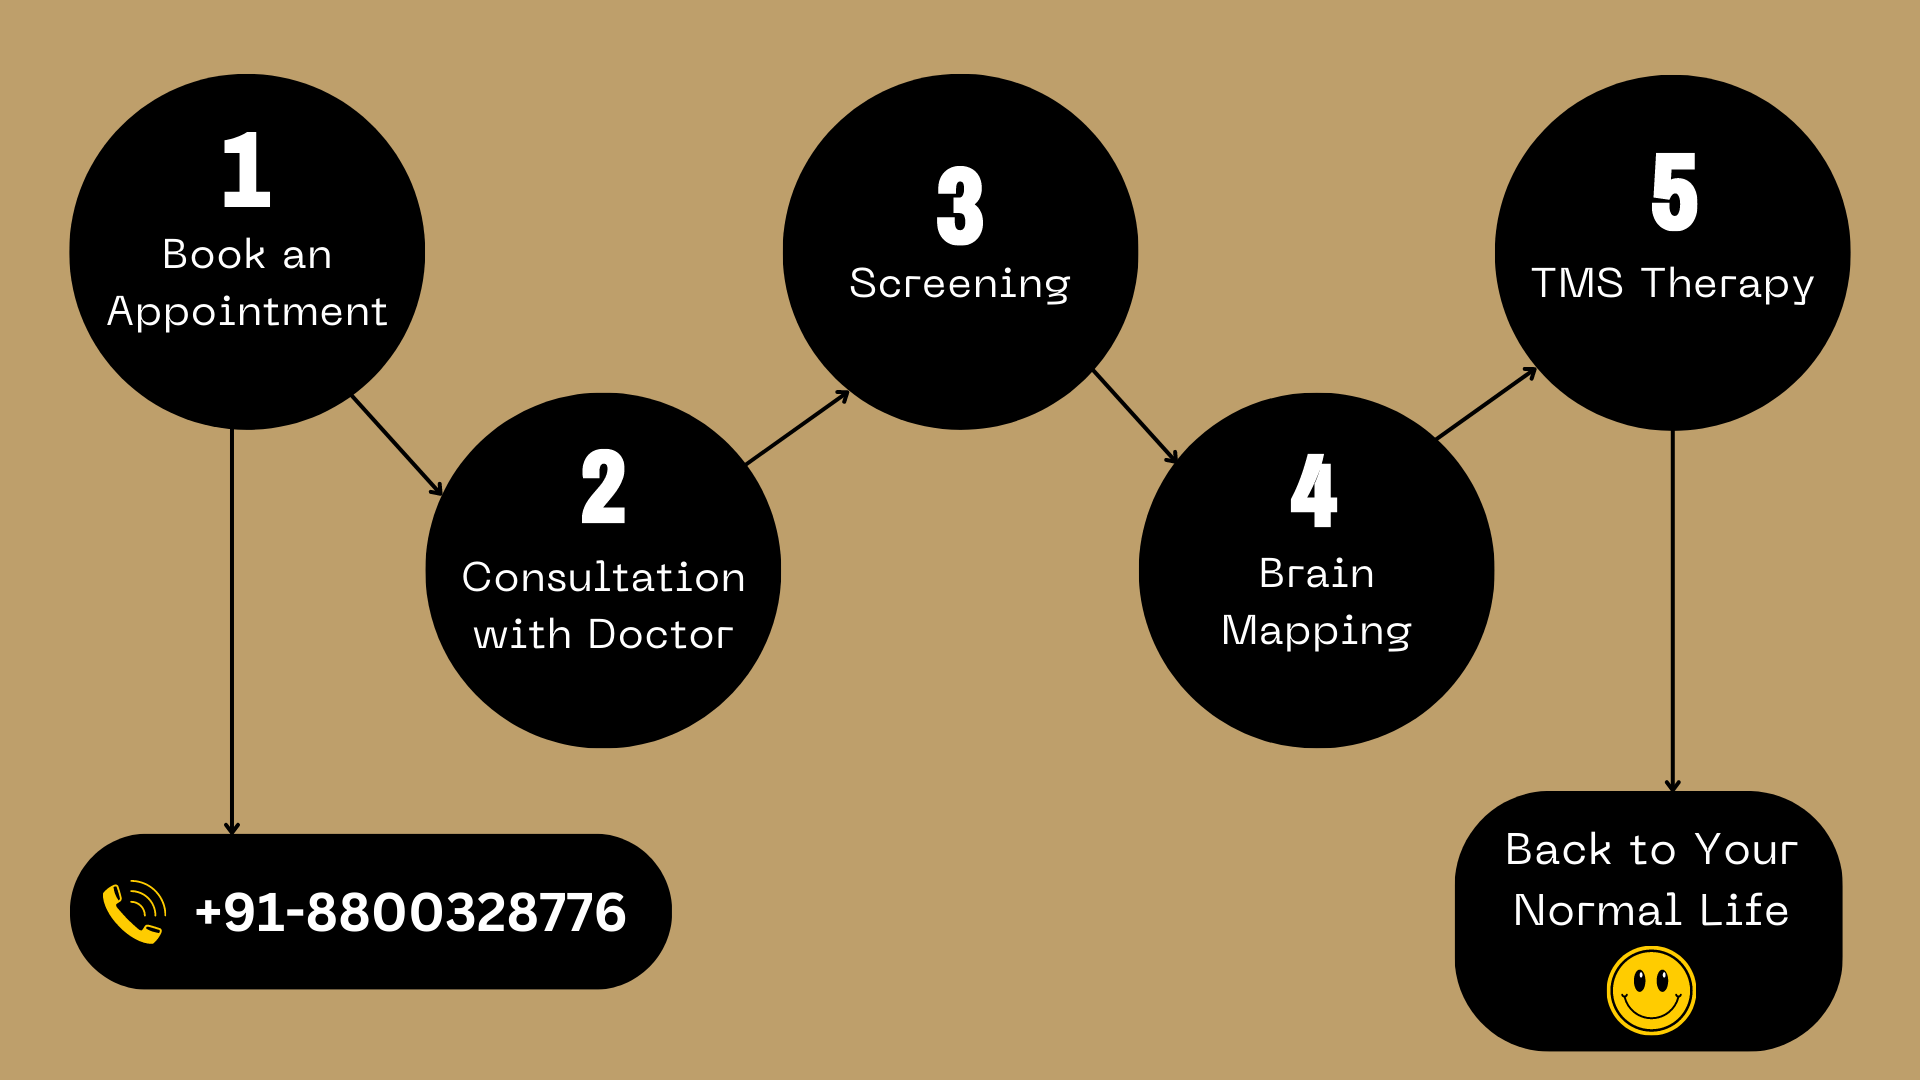 Best Psychiatrist center in Delhi - TMS Process Follow